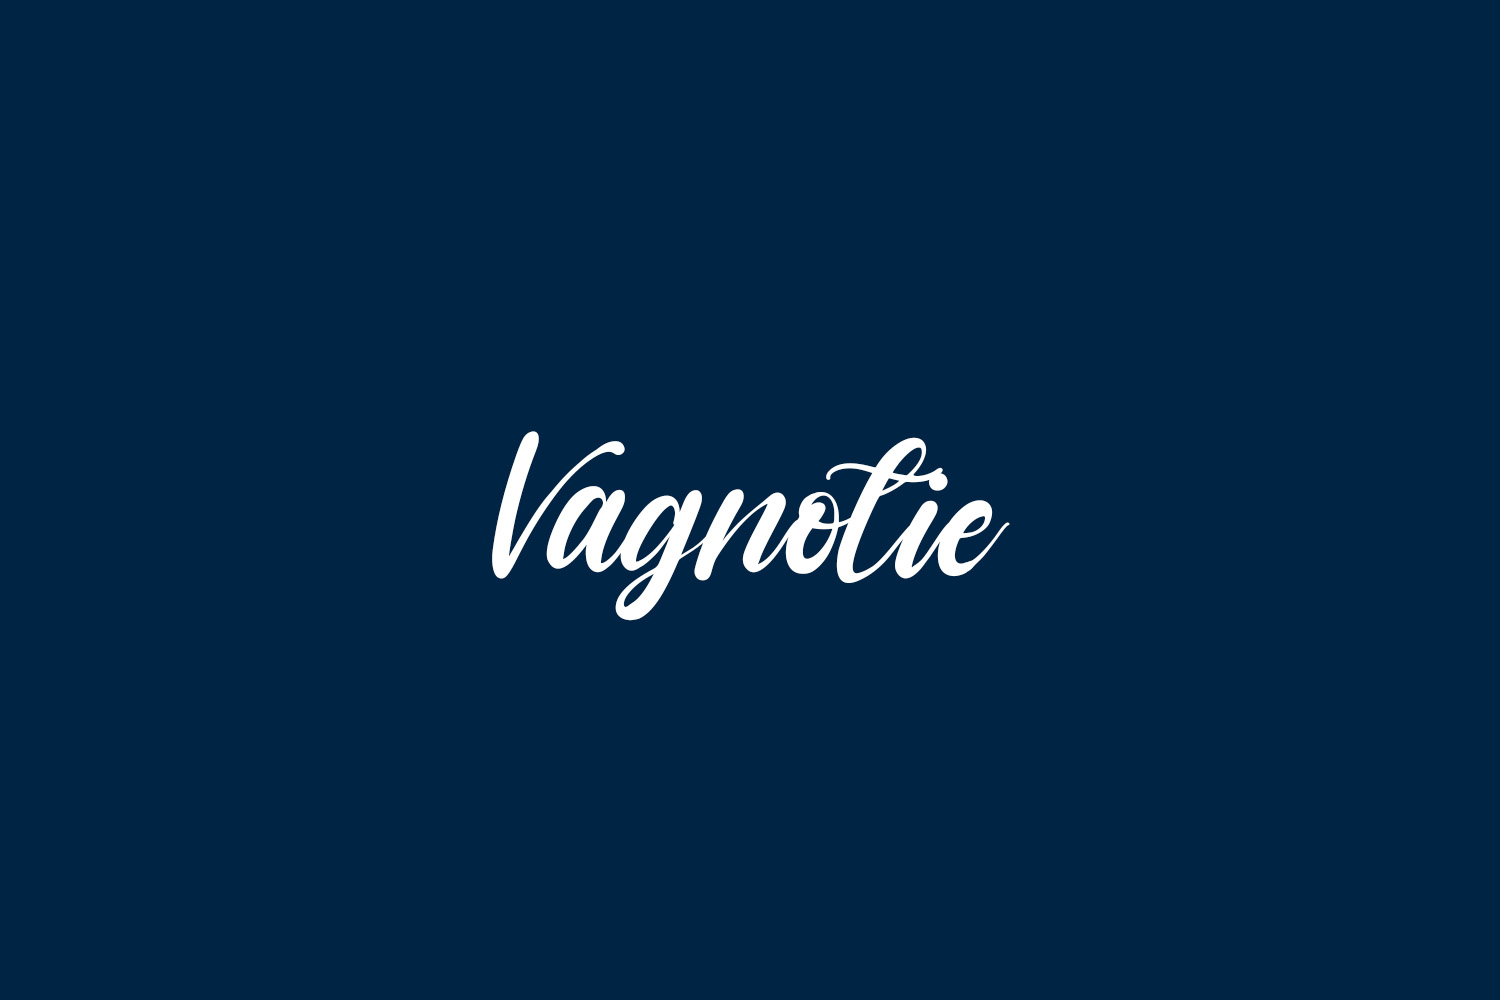 Vagnotie Free Font